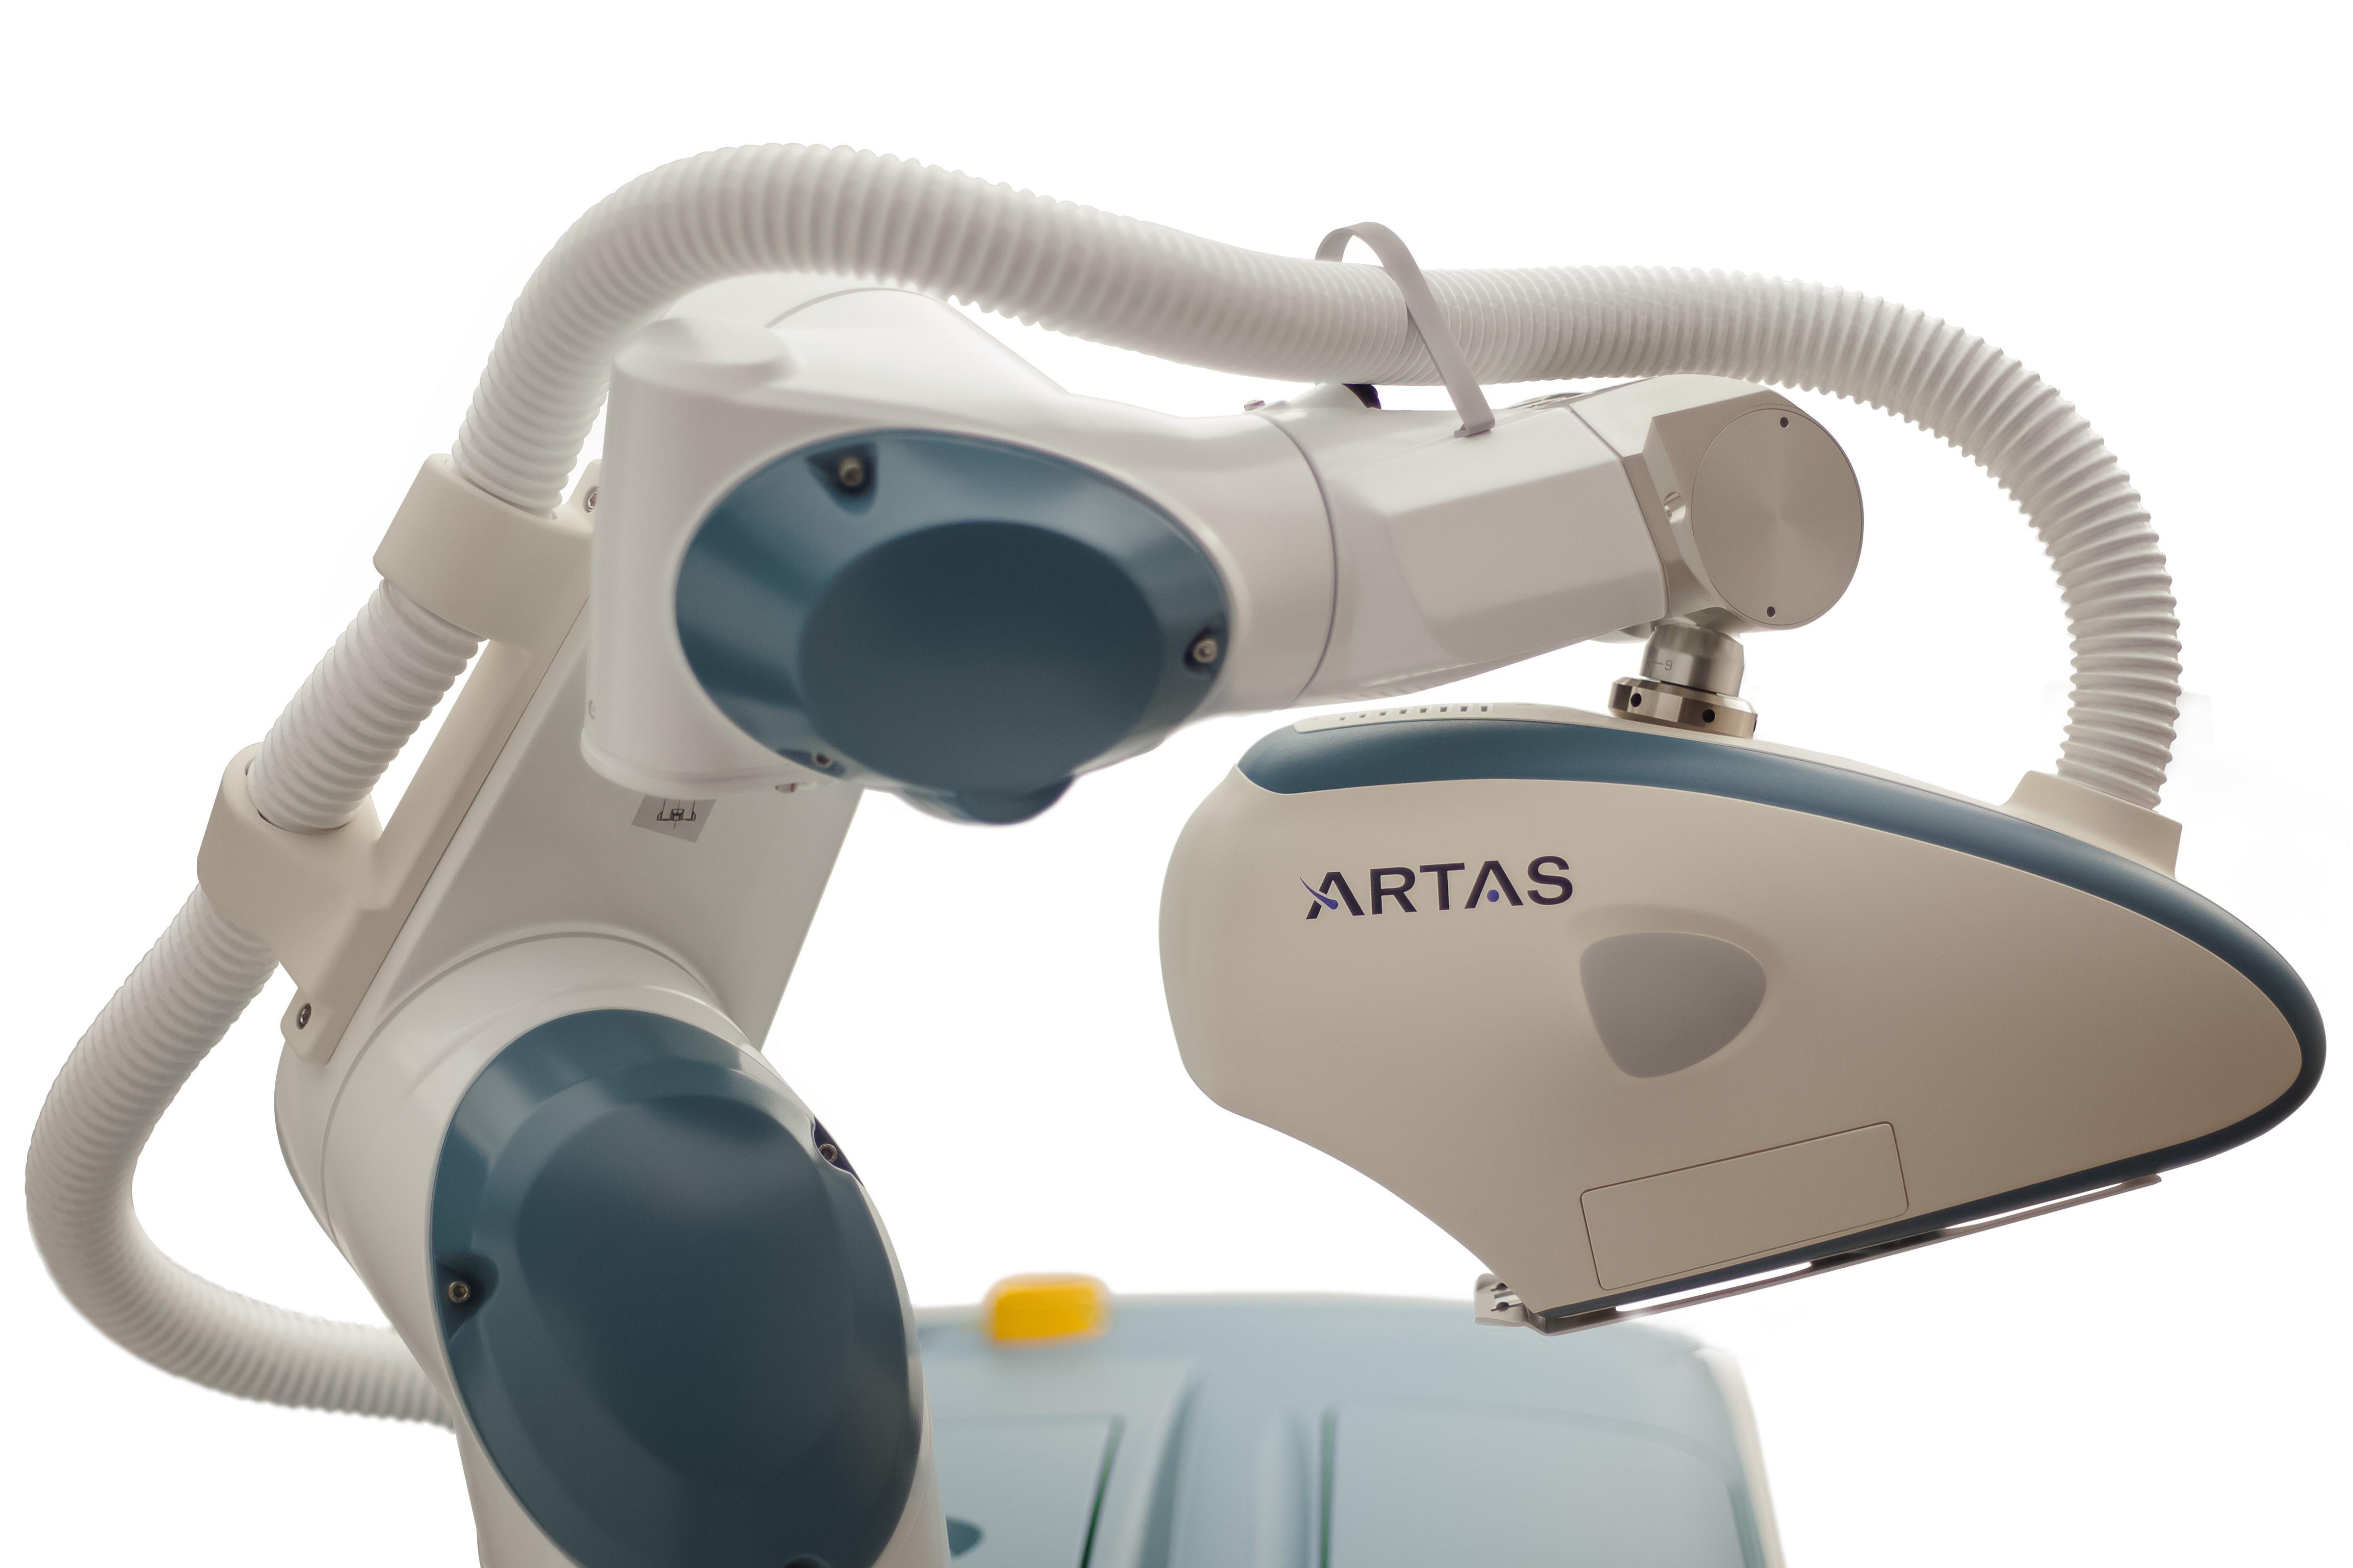 ARTAS Robotic